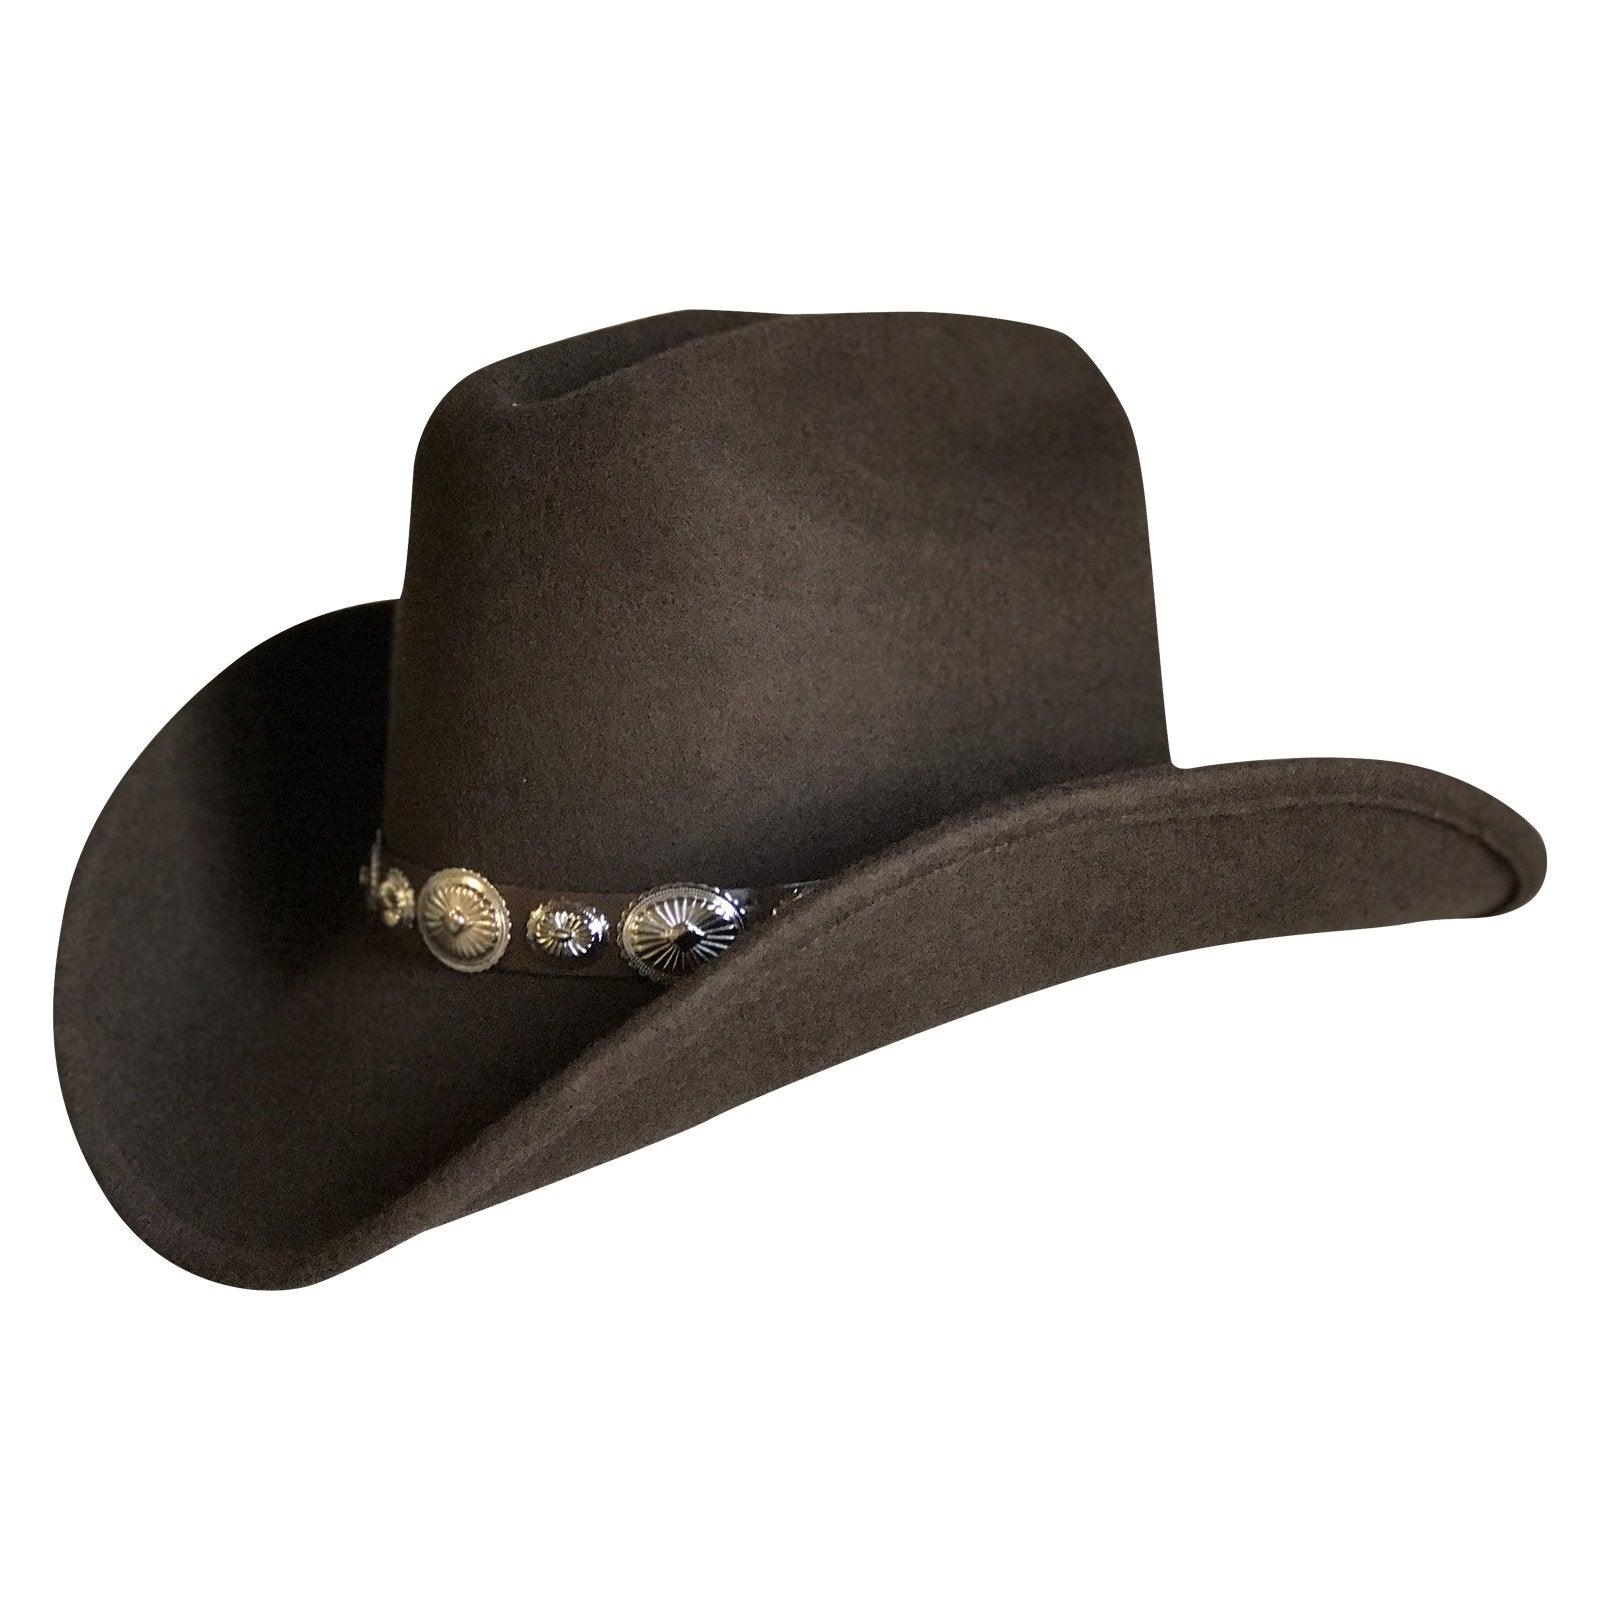 Crushable Brown Felt Concho Western Cowboy Hat - Flyclothing LLC